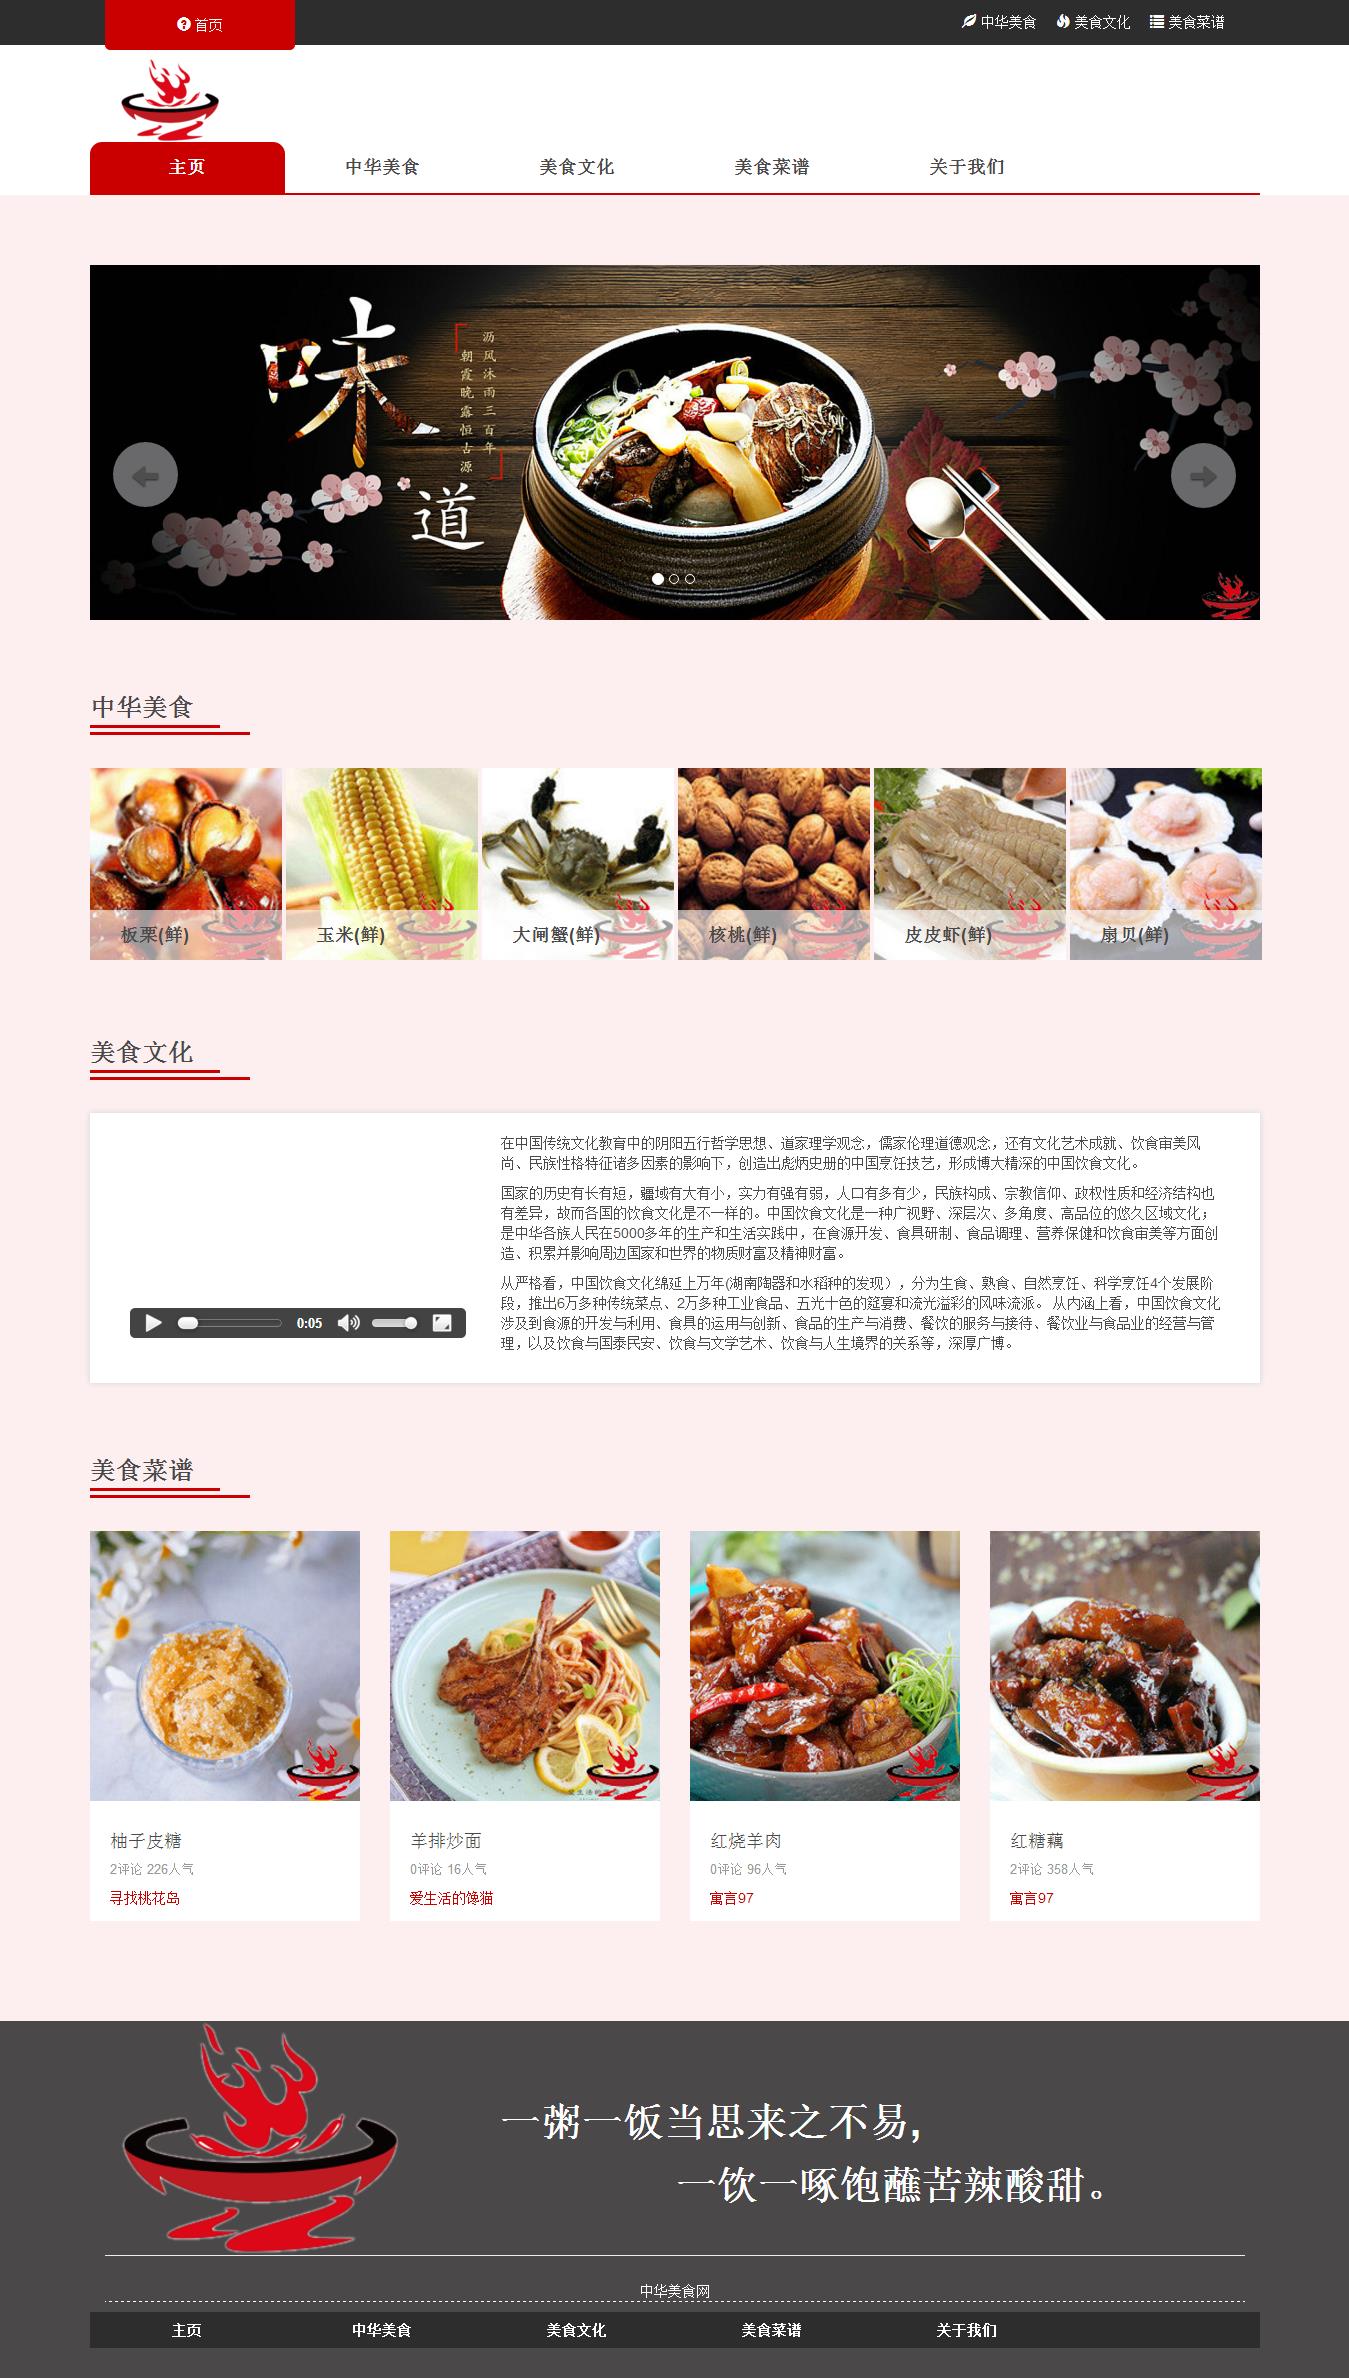 编号：1369 中国美食 10页 轮播 视频 滚动文字 鼠标经过特效 html5 50元